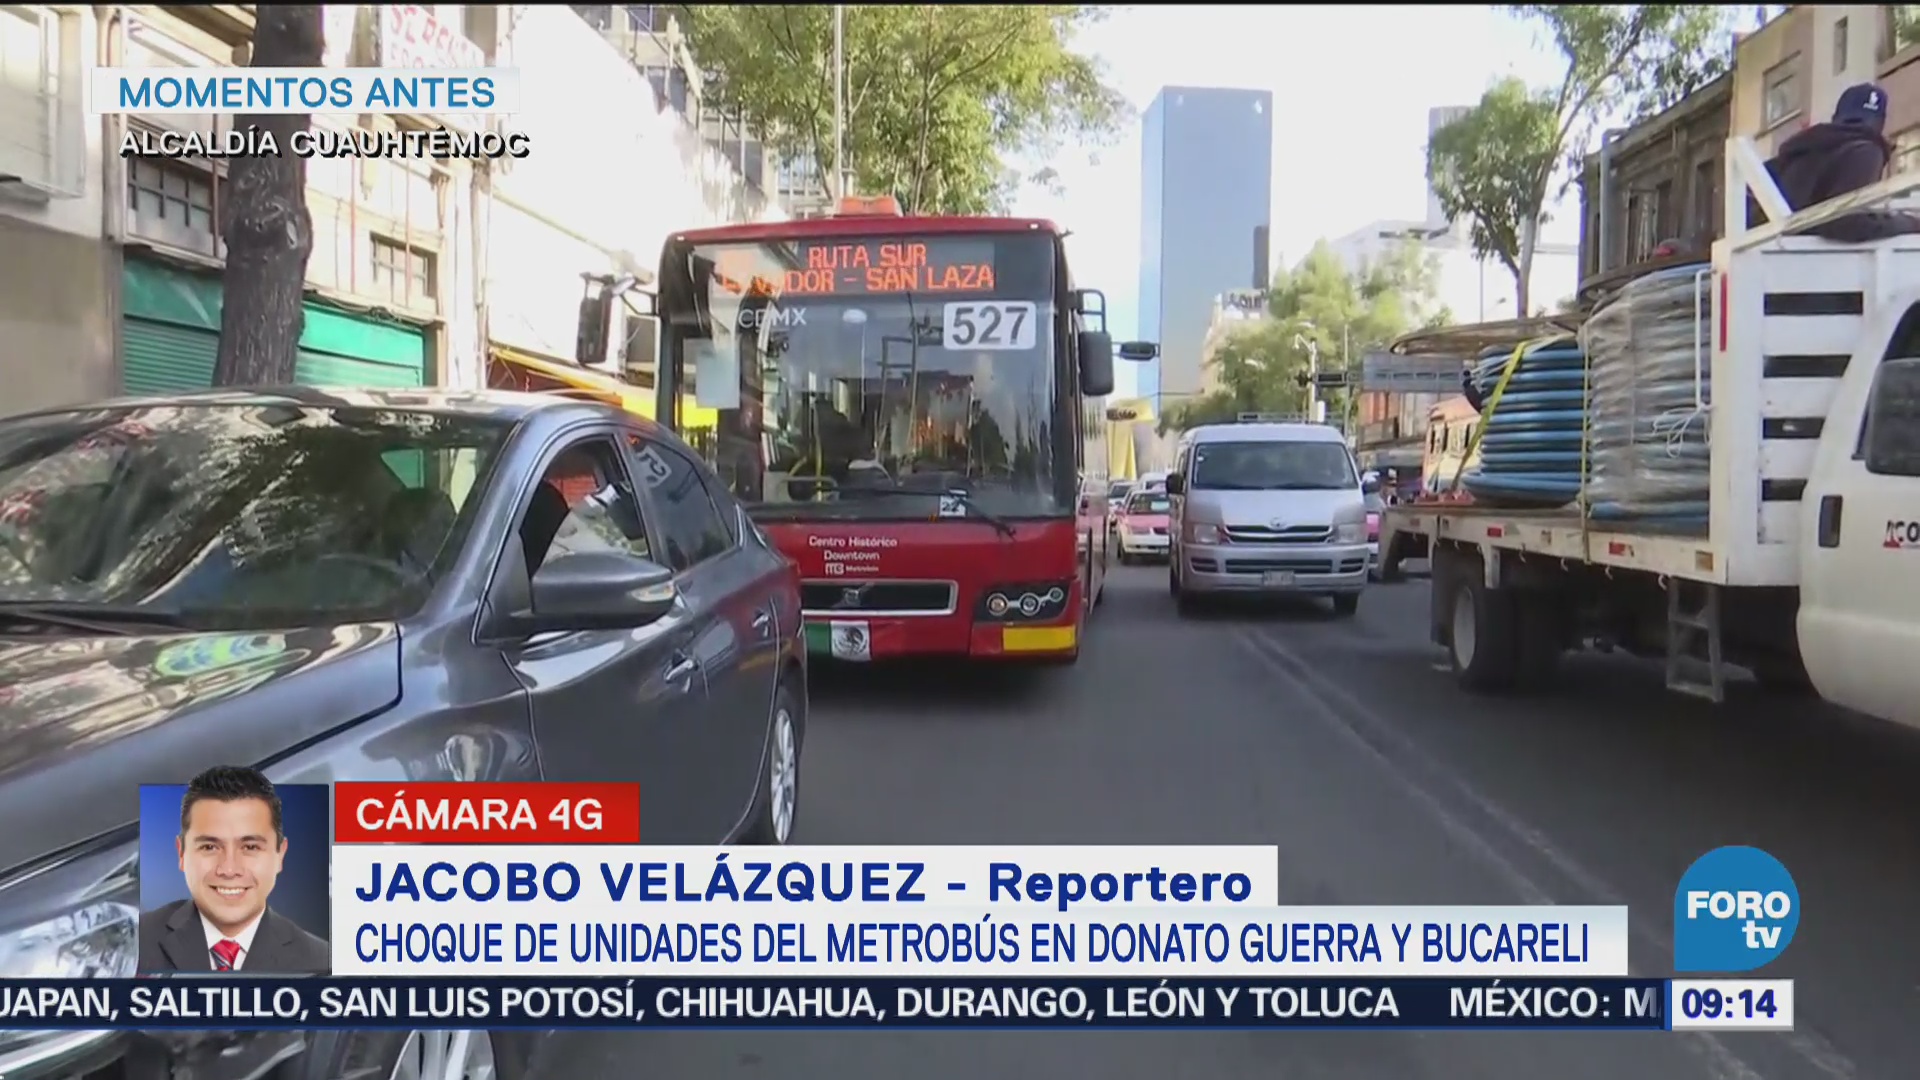 Chocan unidades de metrobús en Donato Guerra y Bucareli